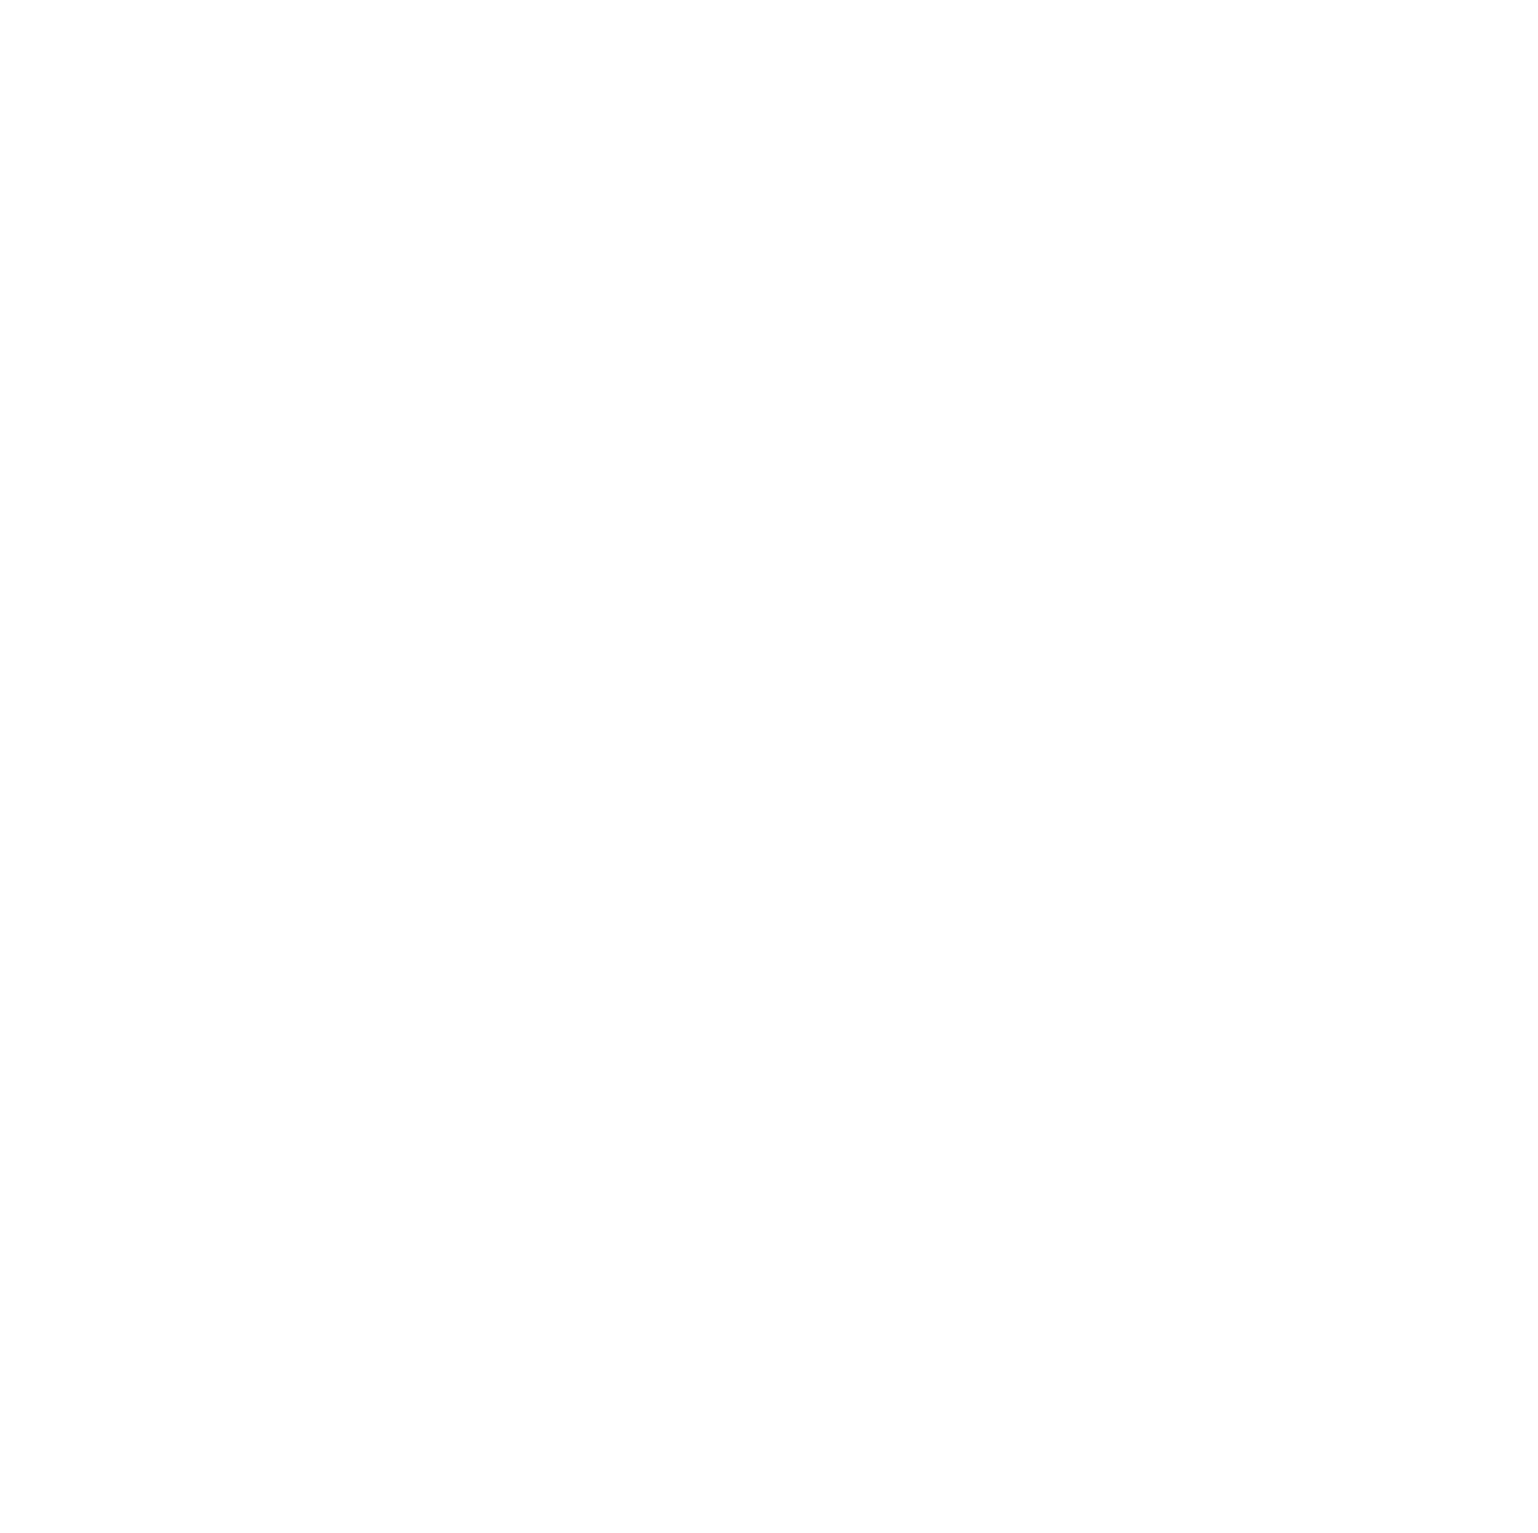 Westport Fuel Systems logo for dark backgrounds (transparent PNG)